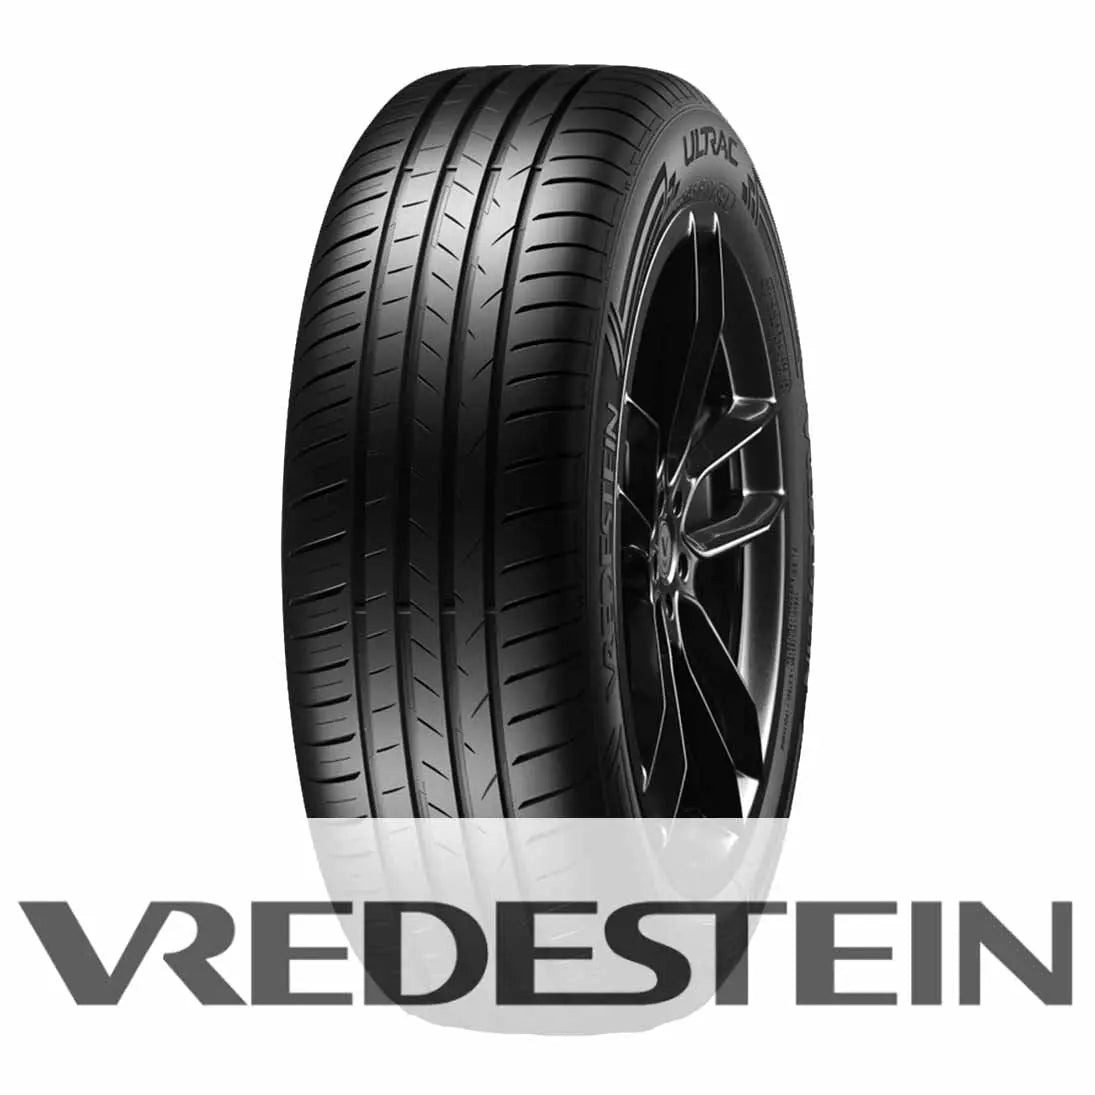 Vredestein Ultrac 225/50 R17 98Y XL Vredestein